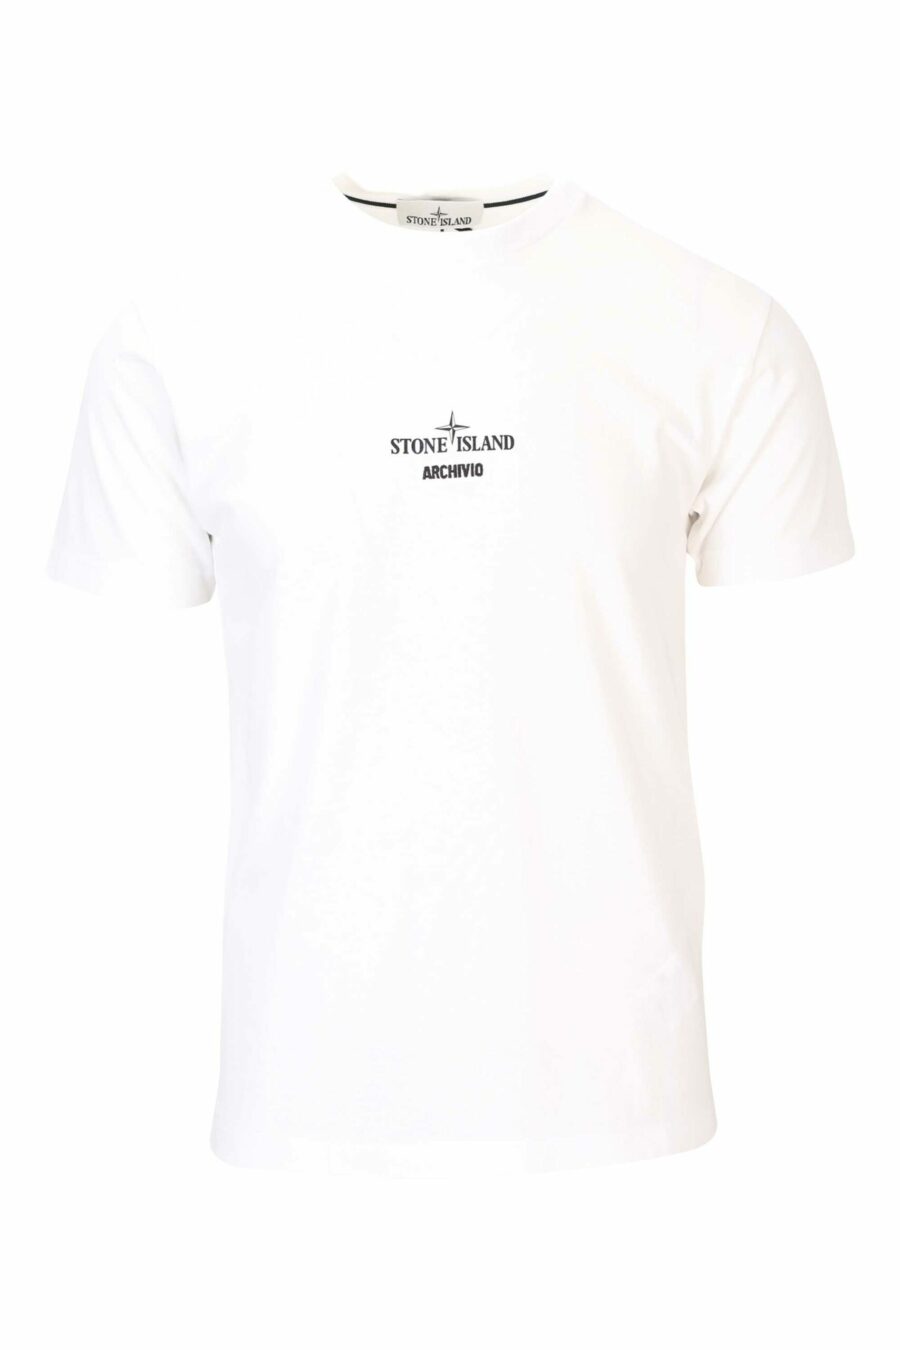 Camiseta blanca con logo centrado y estampado detrás - 8052572755866 scaled